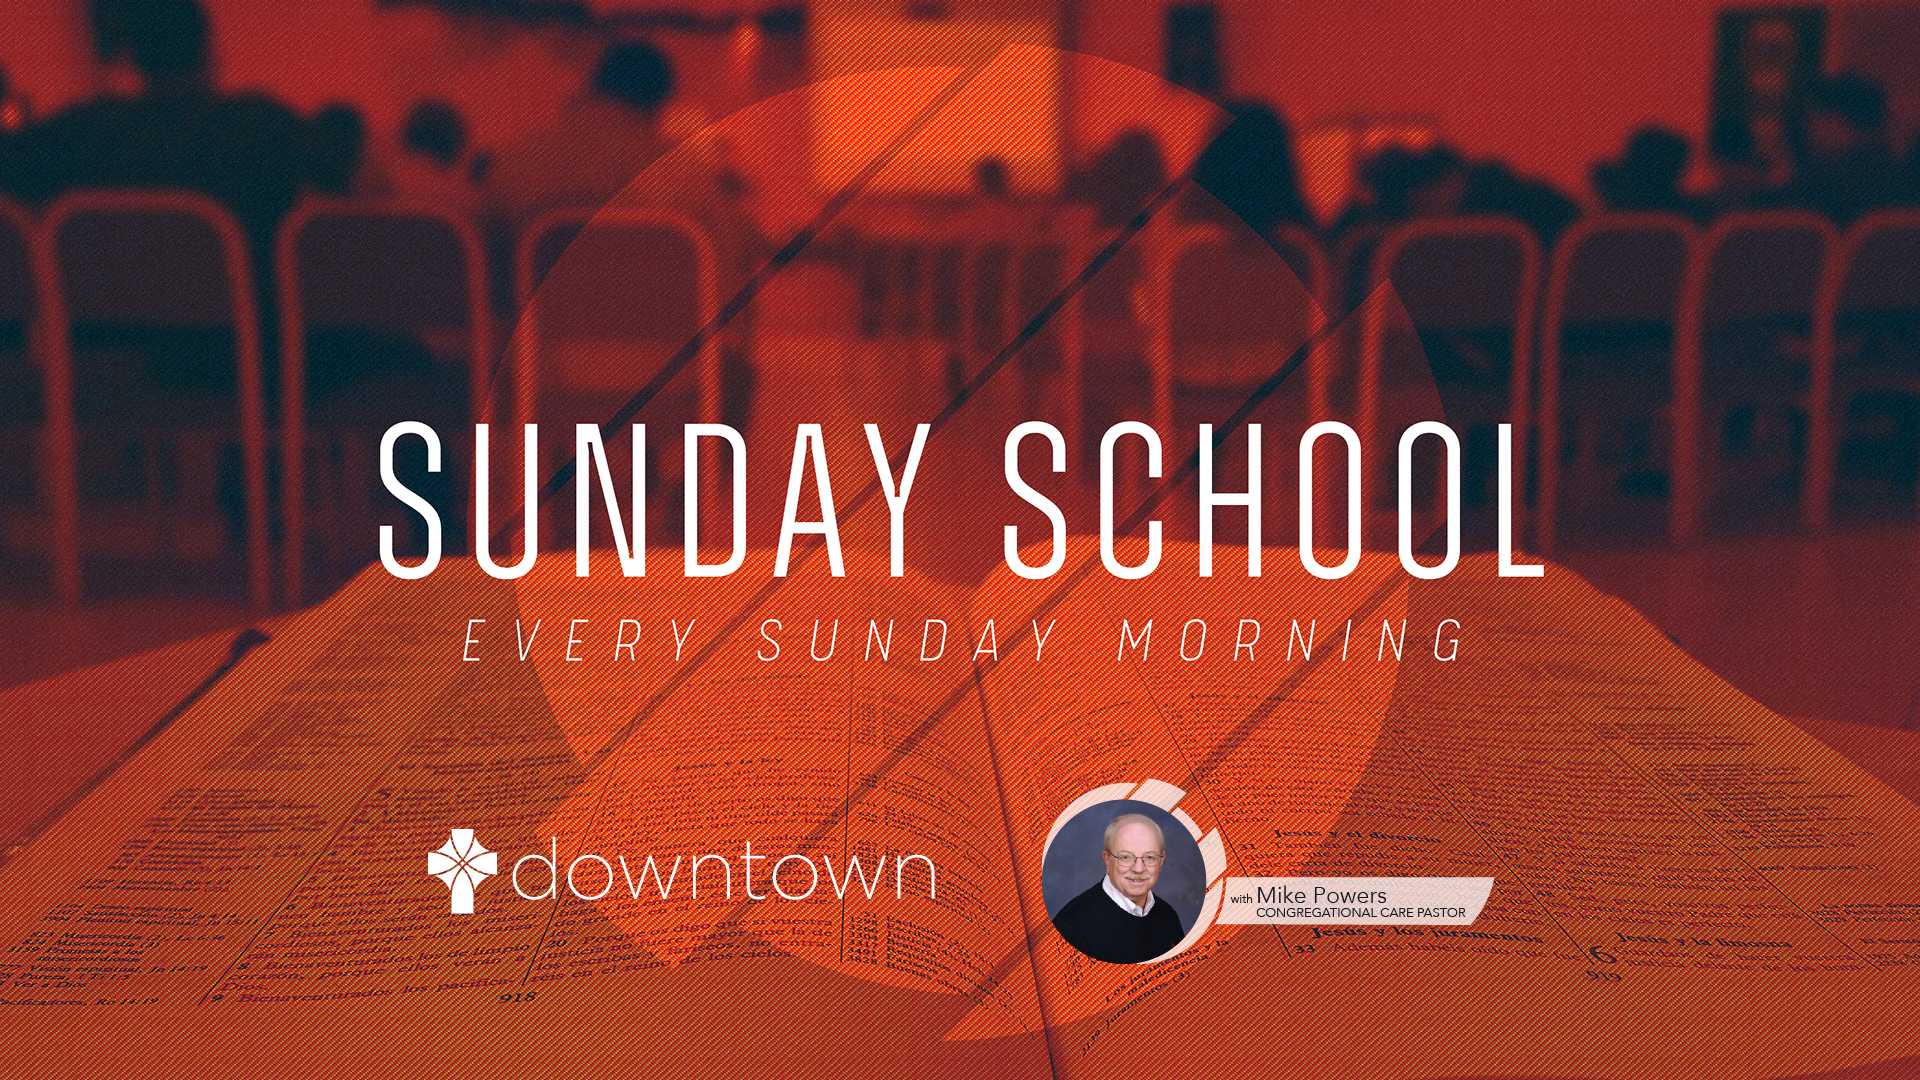 Sunday School Facebook Promo Image (Wide)